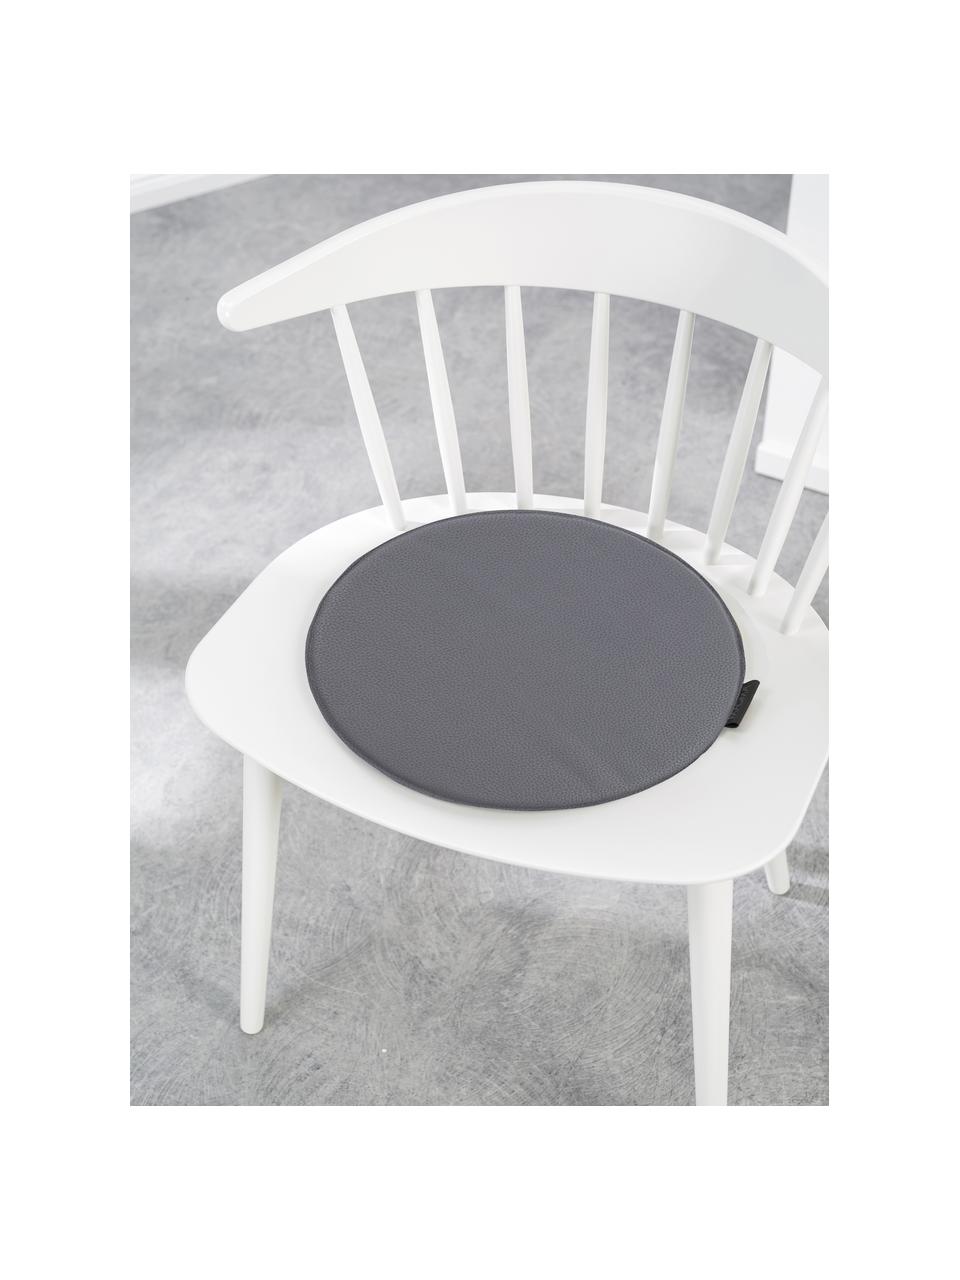 Cuscino sedia rotondo effetto pelle Luis, 100% poliestere, Grigio scuro, Ø 37 cm